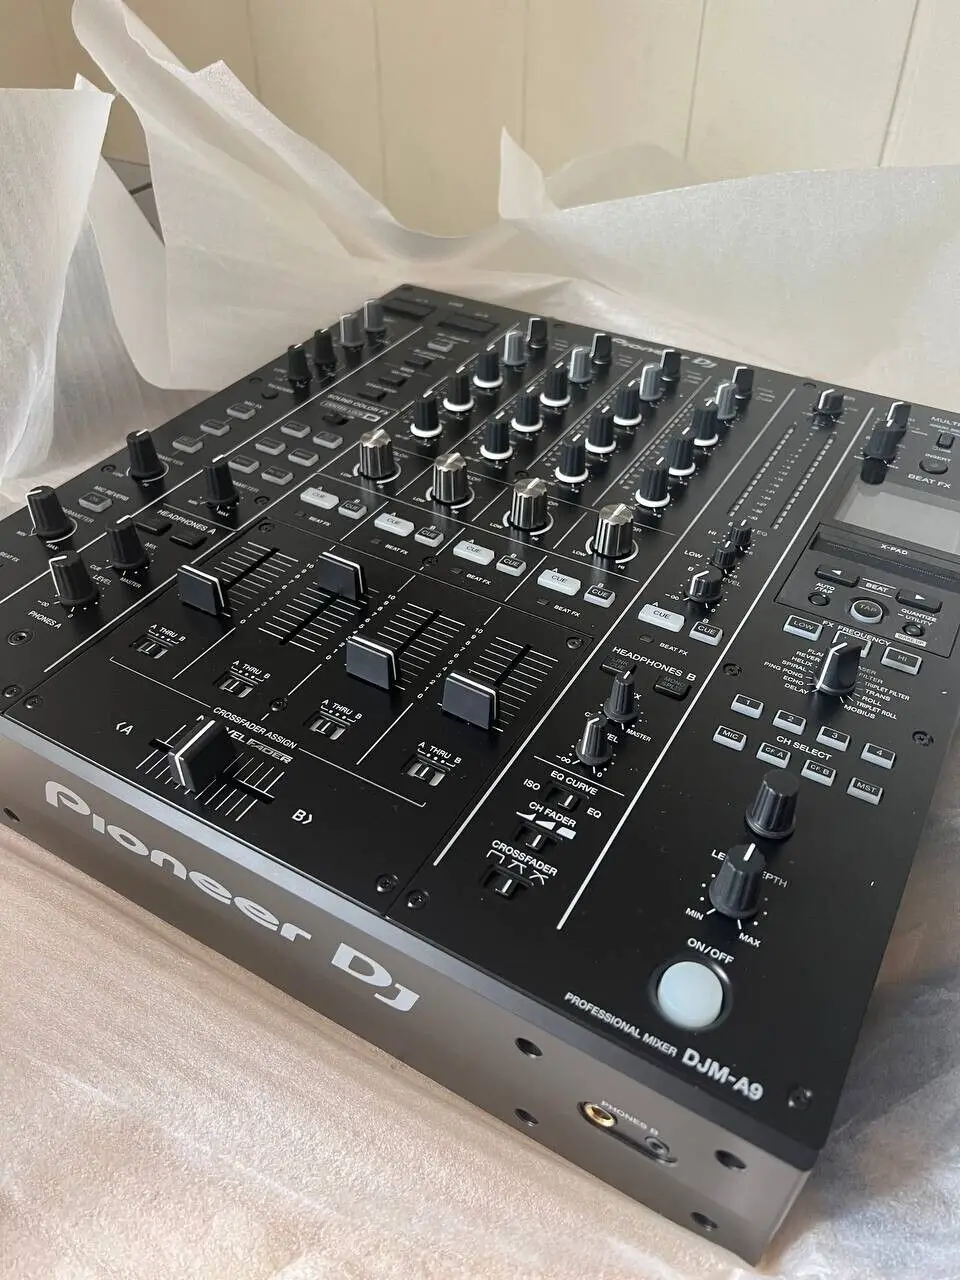 

HOT SALES Pioneer DJM A9 DJ Mixer 4 Channel ( DJM 900 NXS2 Upgrade ) - Brand New In Box